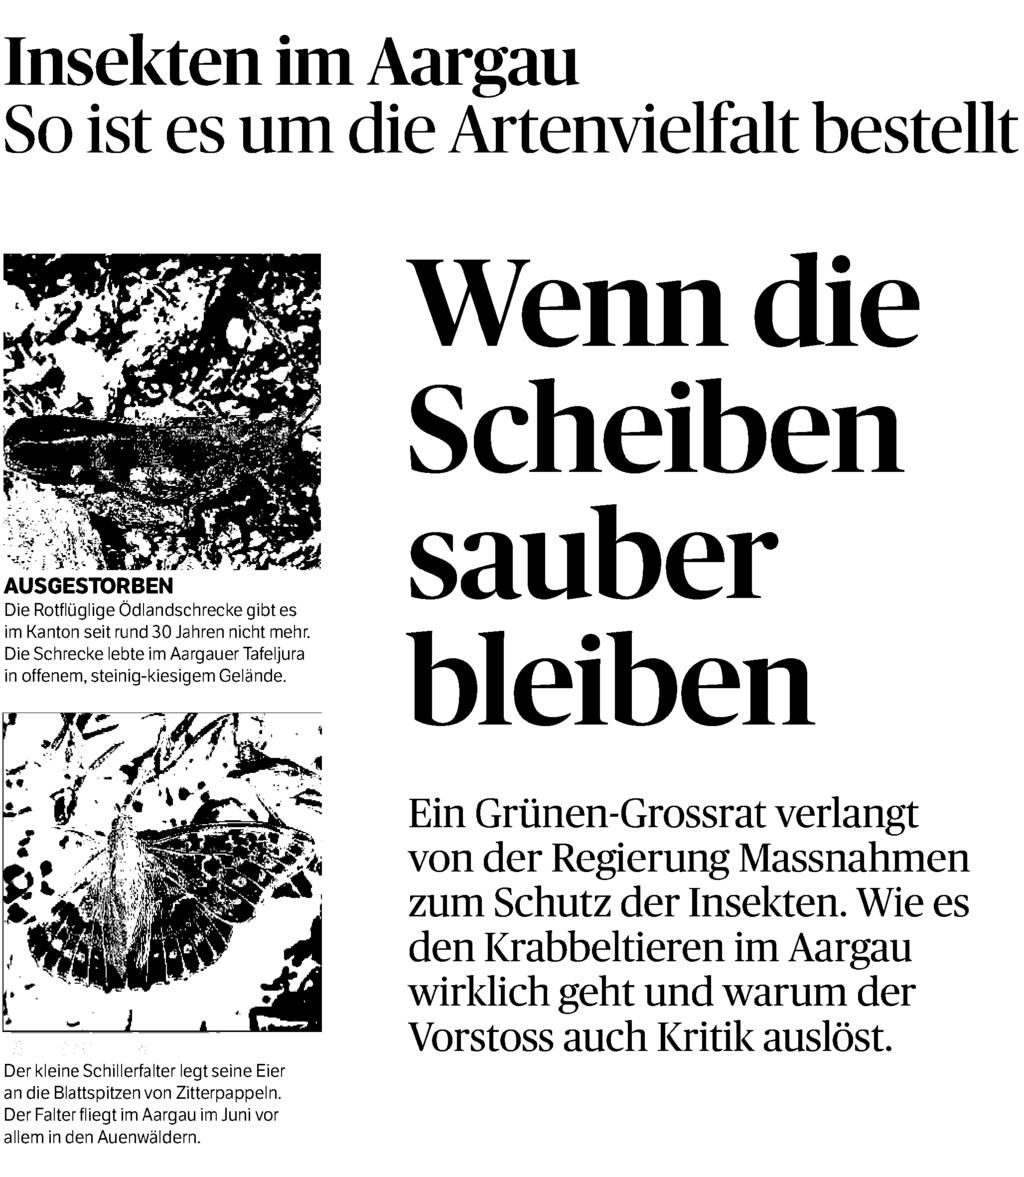 Ausschnitt Seite: 1/6 Insekten im Aargau So ist es um die Artenvielfalt bestellt AUSGESTORBEN Die